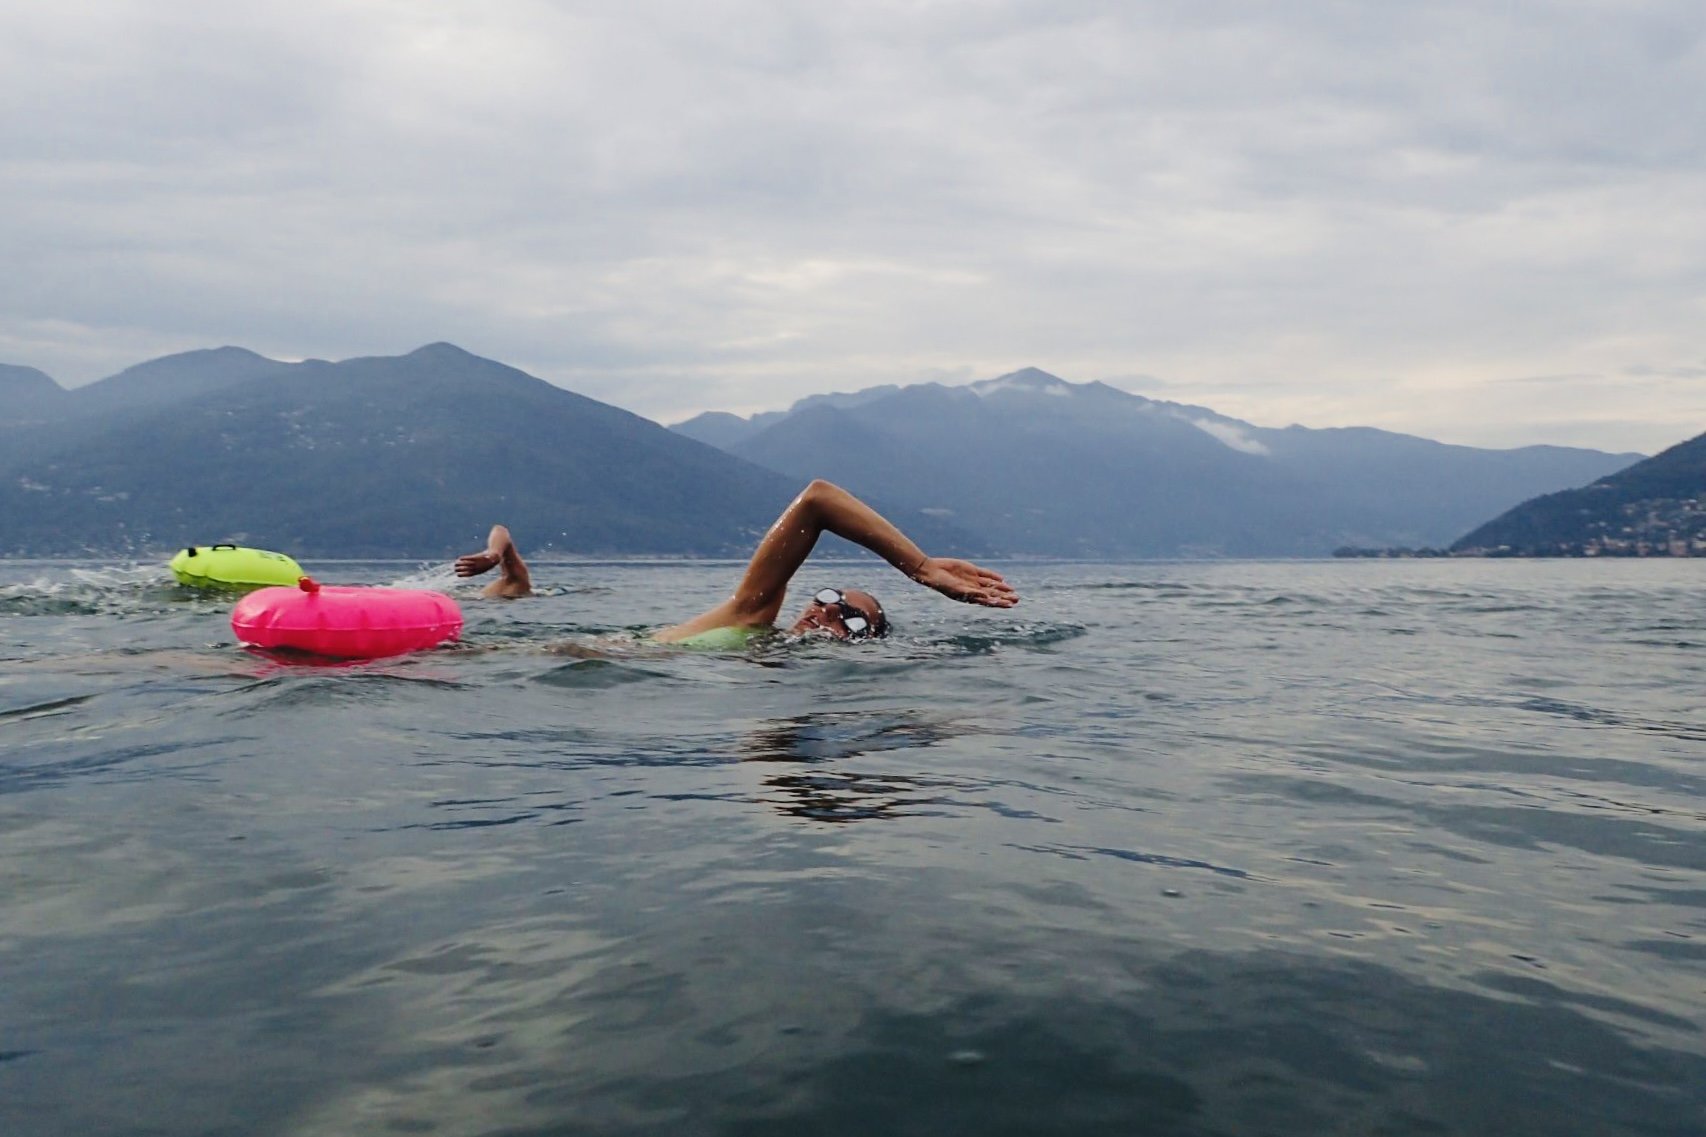 schwimmen-mit-boje-sicherheit-sichtbarkeit-auftrieb-bei-krampf-erschoepfung-langstrecken-kraulen-badeorte-lago-maggiore.jpg